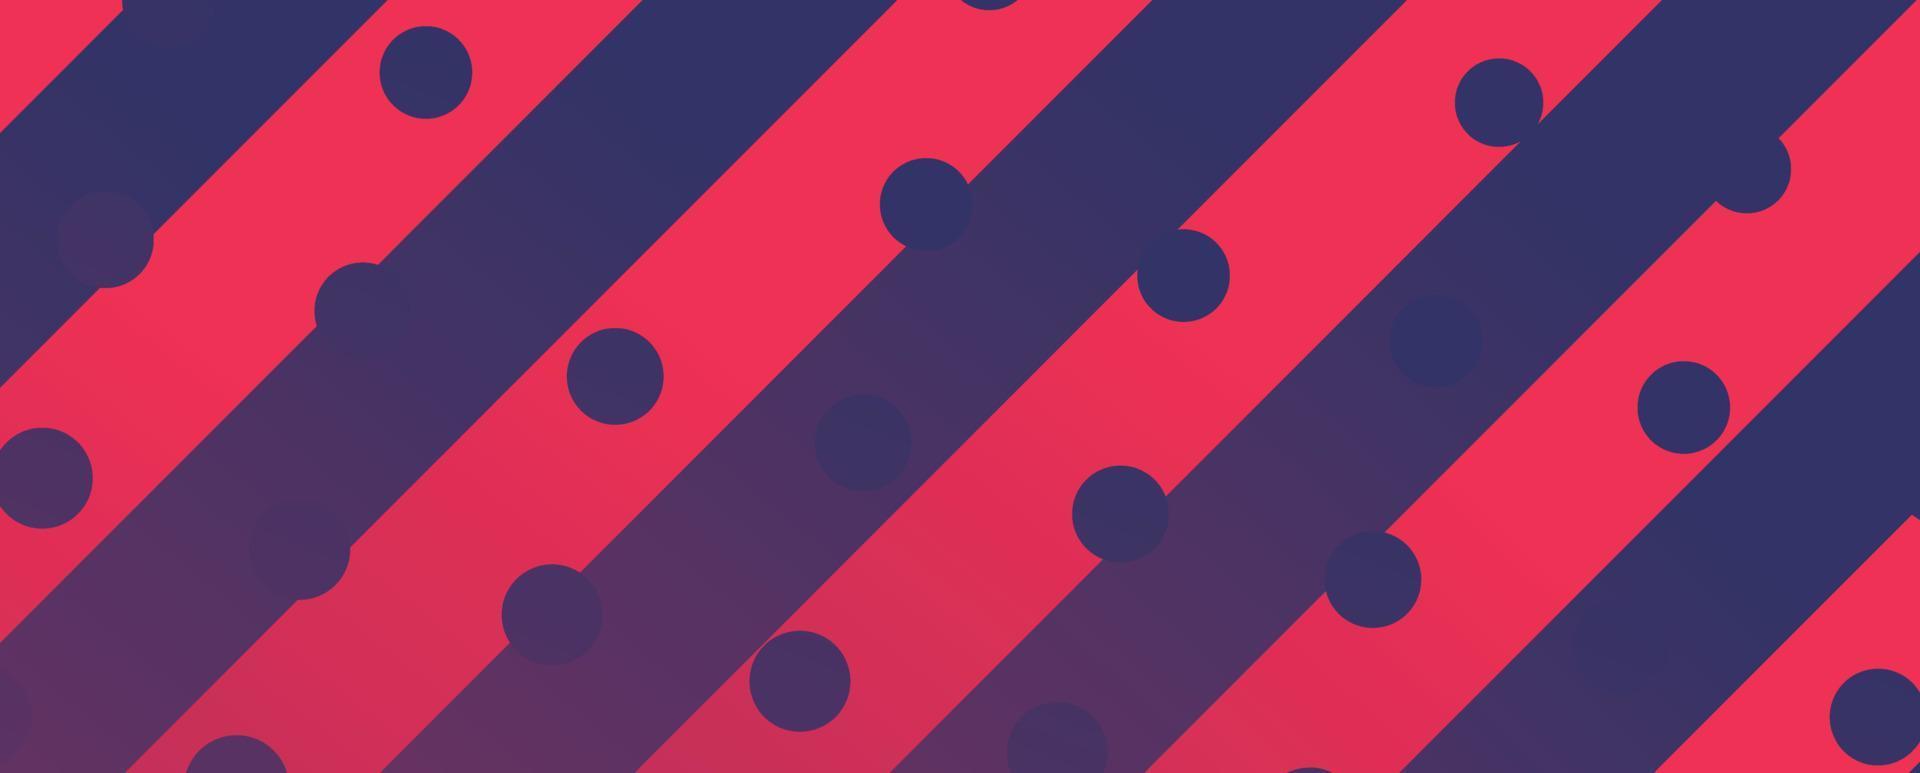 abstracte moderne rode en blauwe achtergrond vector